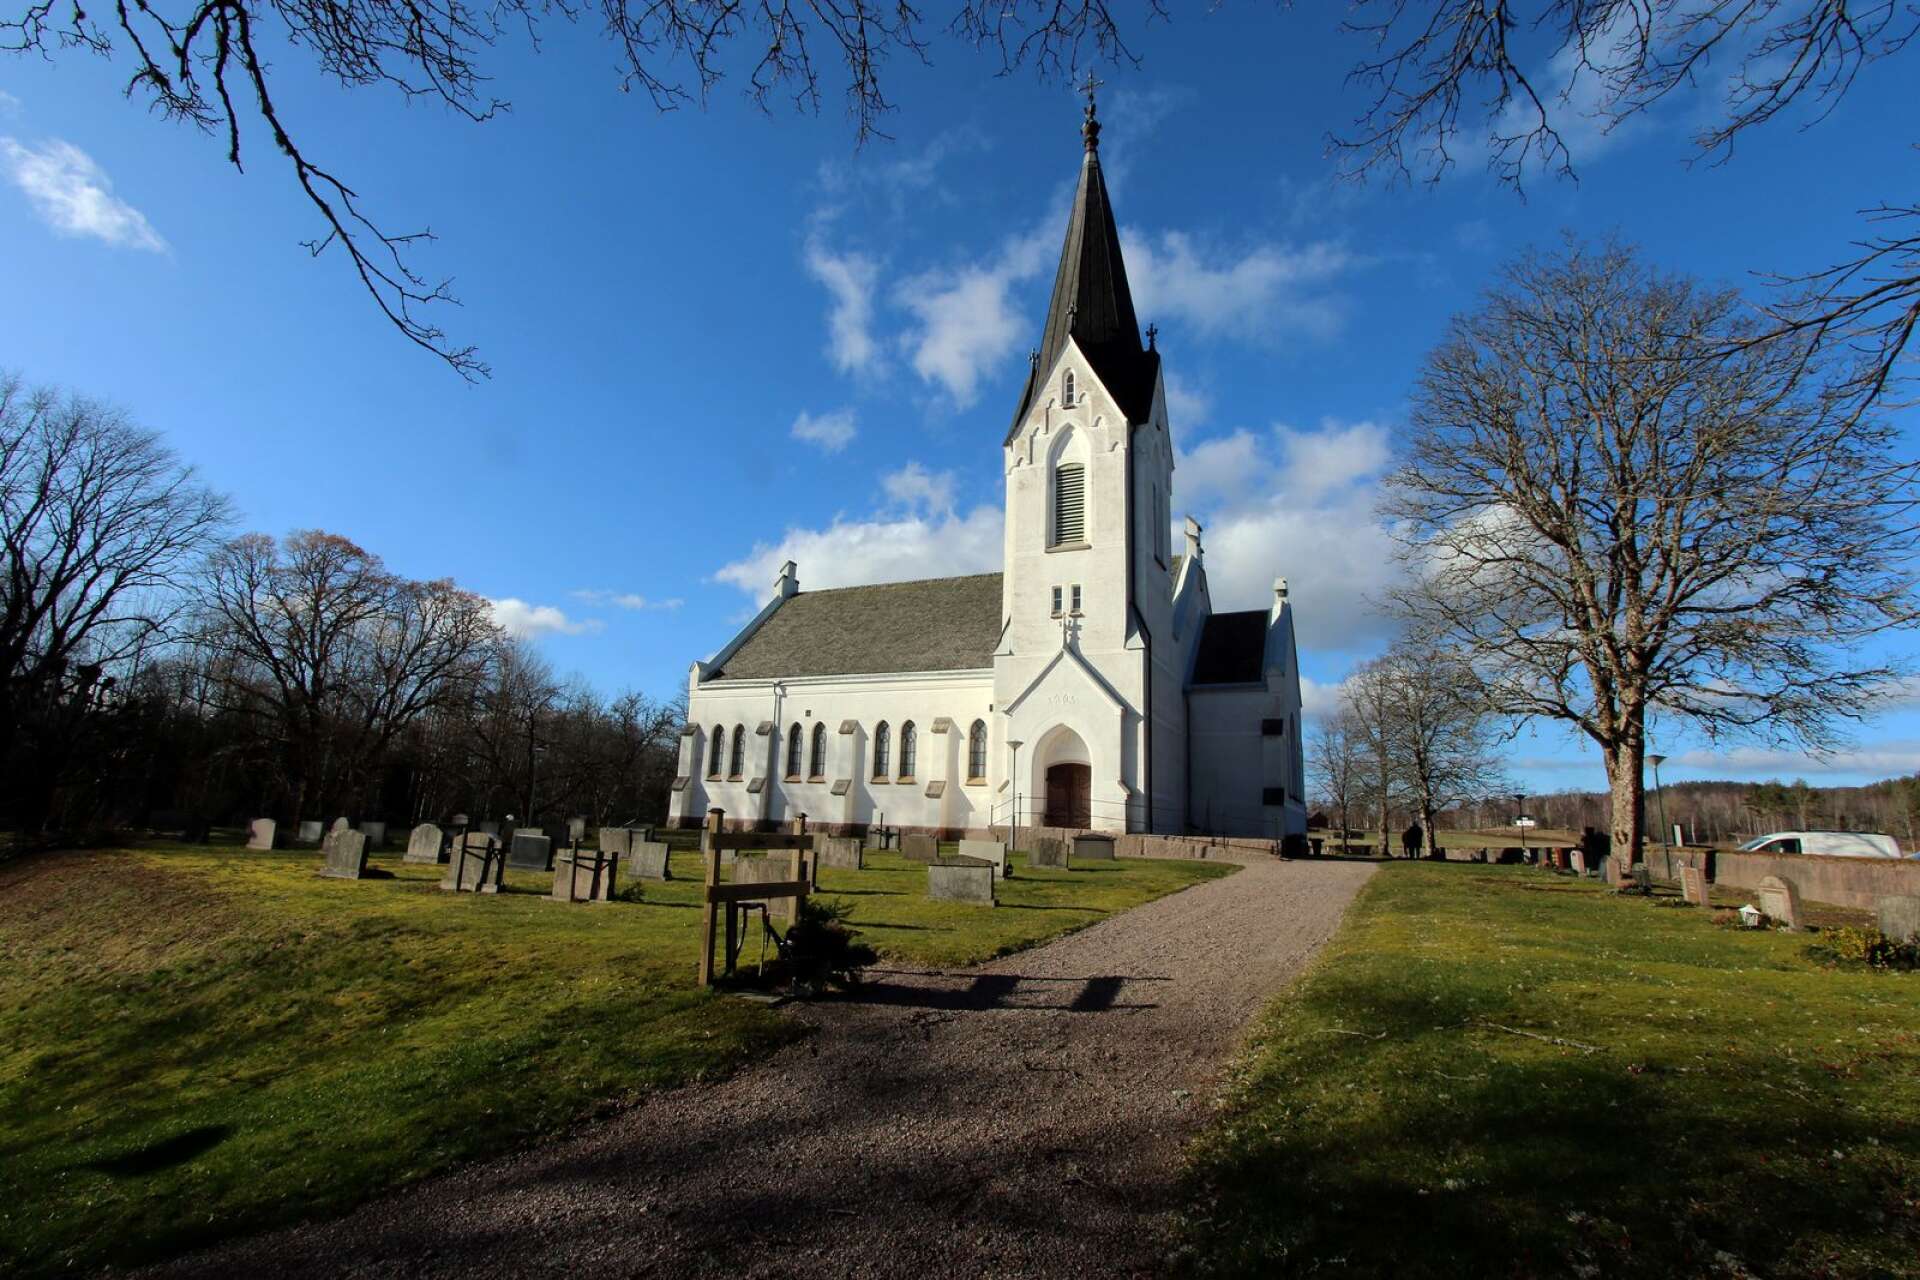 Edsleskogs kyrka tillhör Åmåls församling och invigdes 1905. Nu inrymmer kyrkan även ett modernt församlingshem.